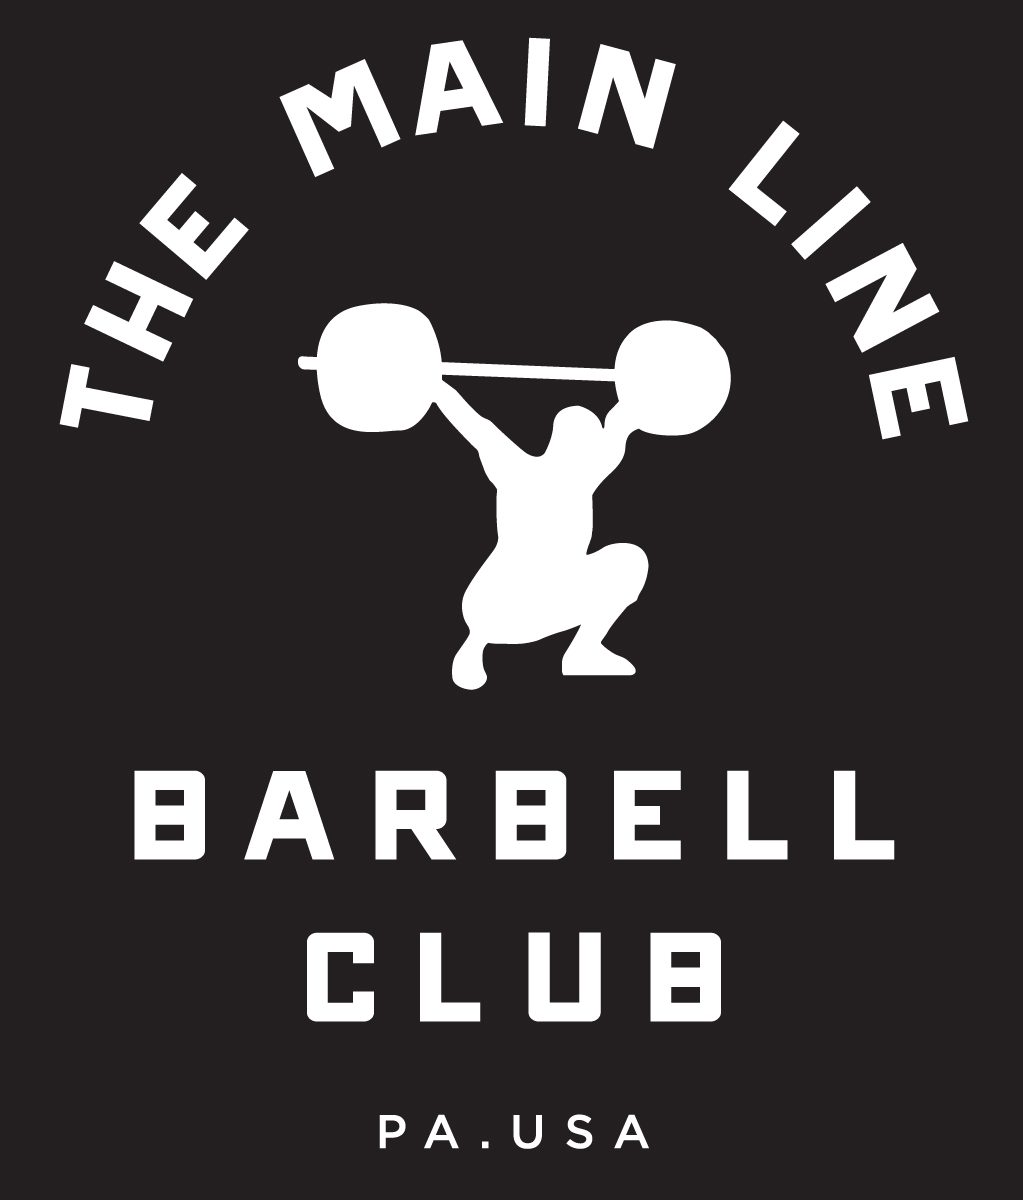 Week of 10.24.16 Barbell Club